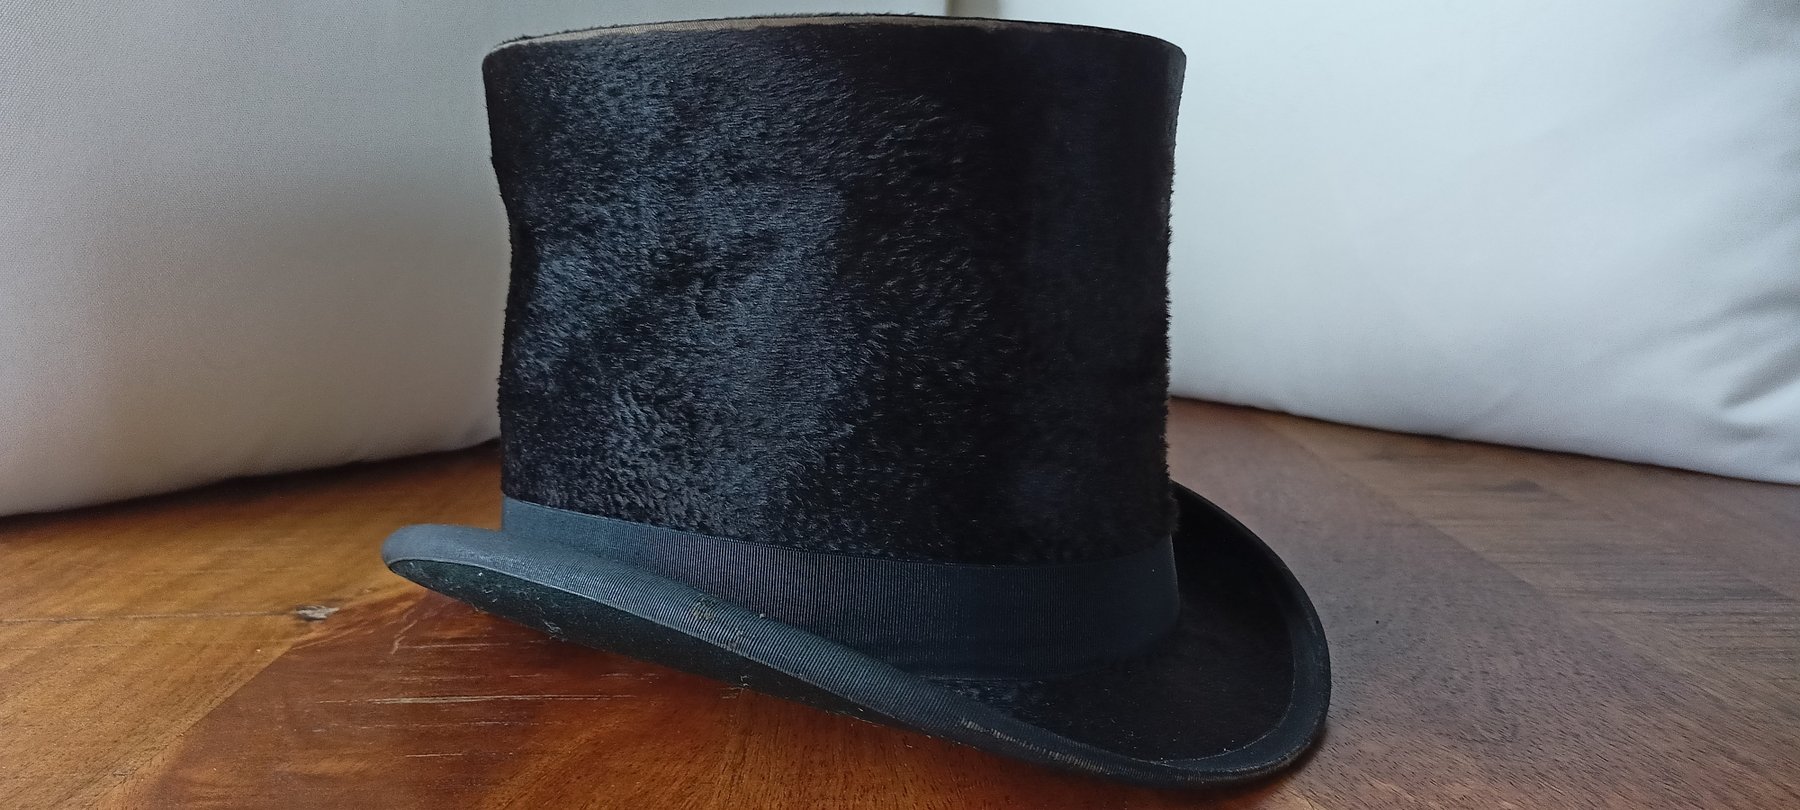 Hat or helmet (1) - Black velvet (a priori) - Catawiki